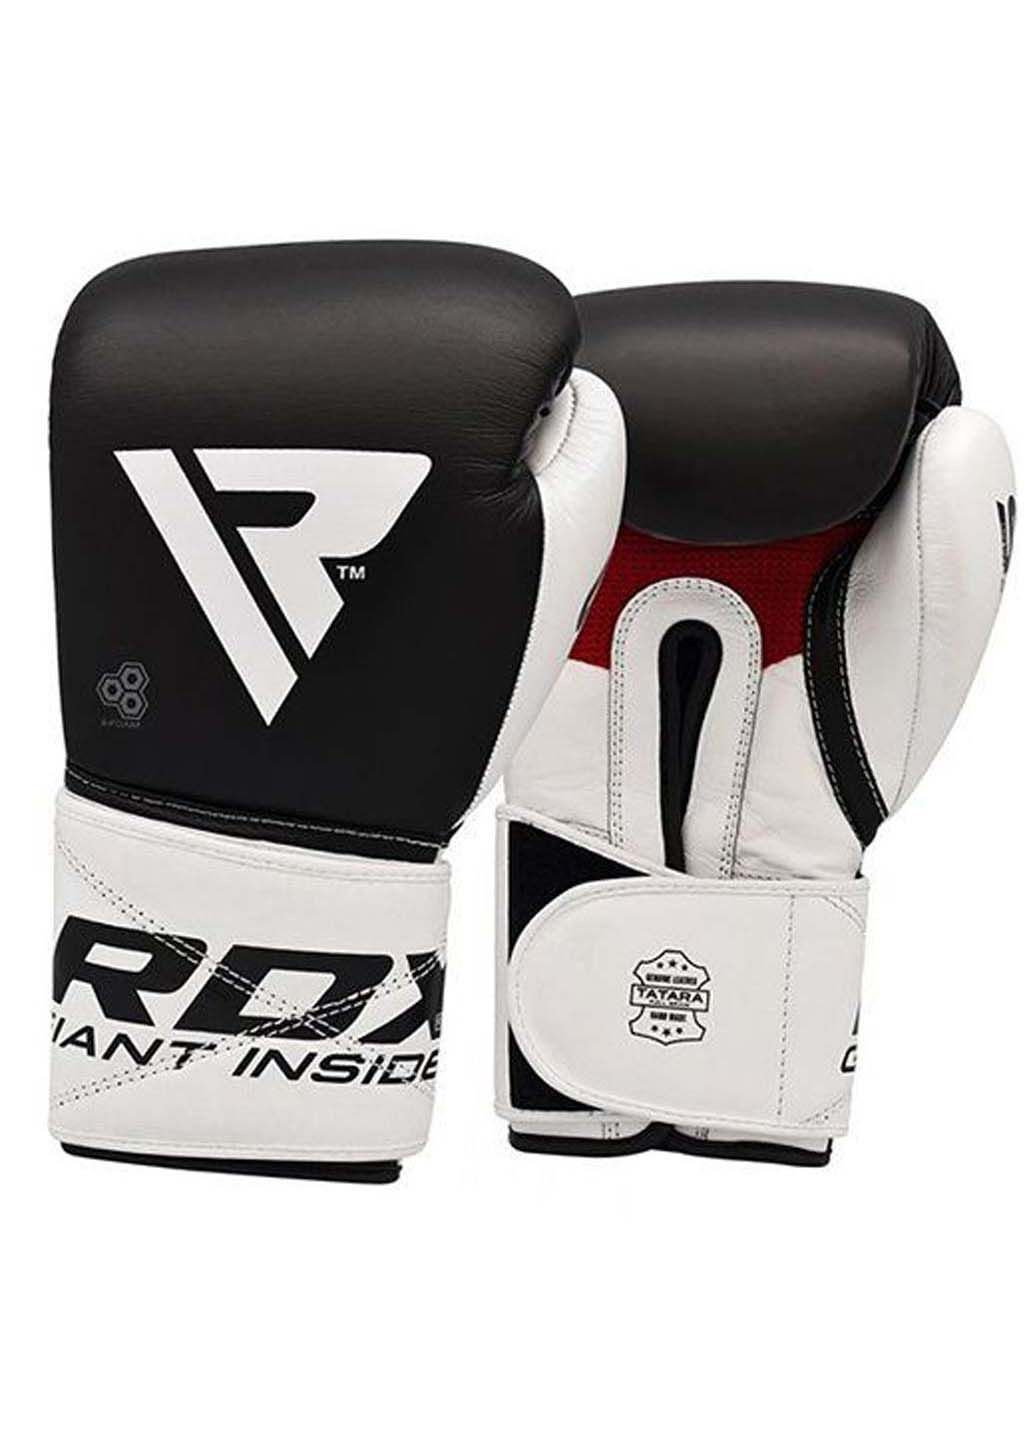 Боксерские перчатки Pro Gel S5 Inc 10oz RDX (285794099)